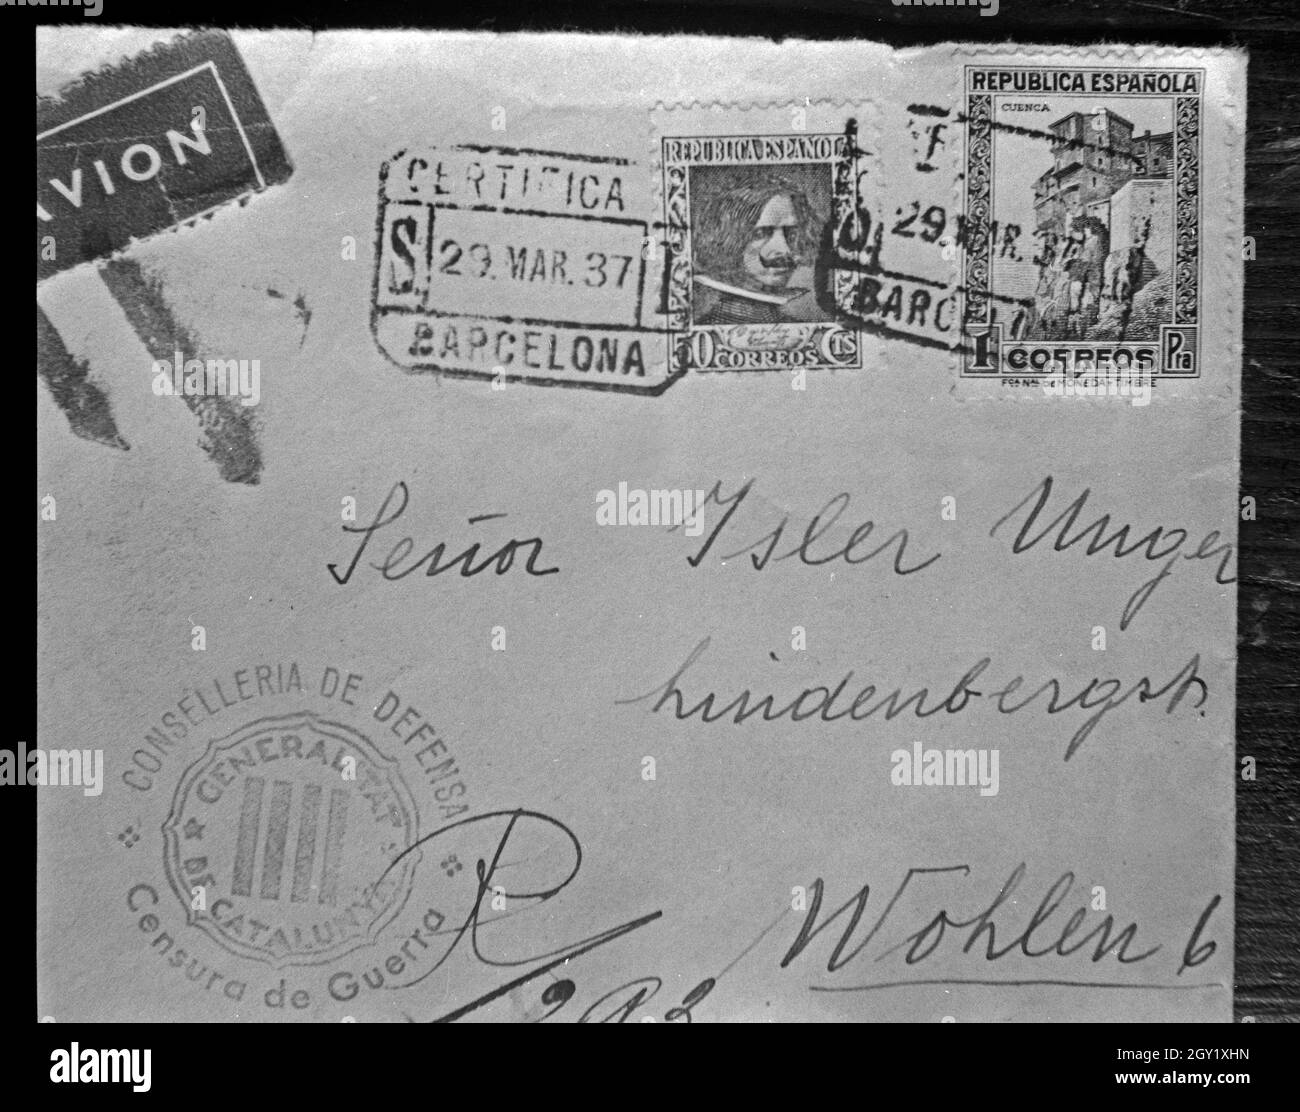 Reproduktion eines Briefumschlages aus Spanien vom 29. März 1937, Deutschland 1930er Jahre. Die Vervielfältigung von einen Umschlag aus Spanien vom 29. März 1937, in Deutschland 1930. Stockfoto